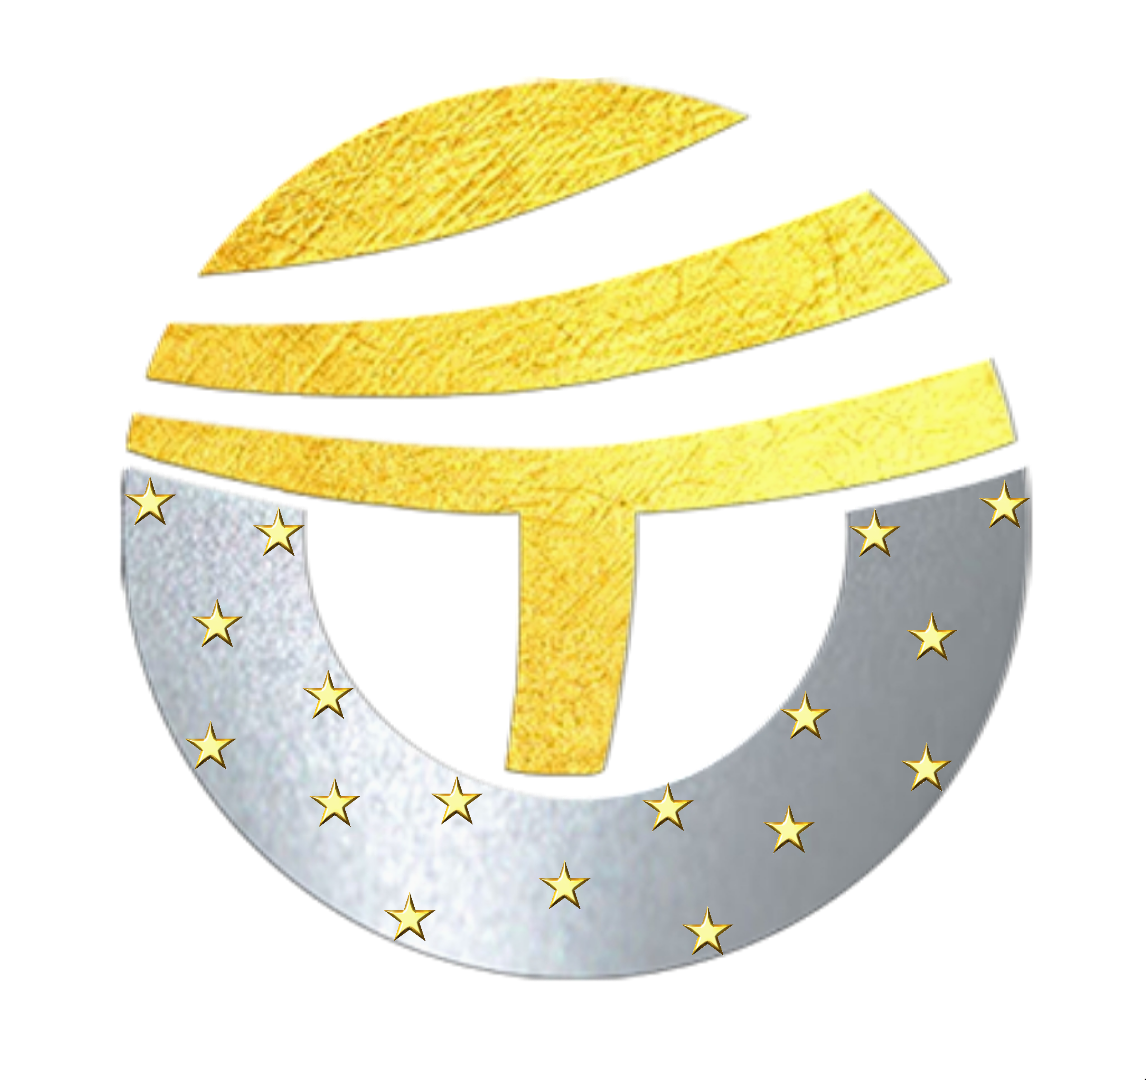 TrumpCoin logo